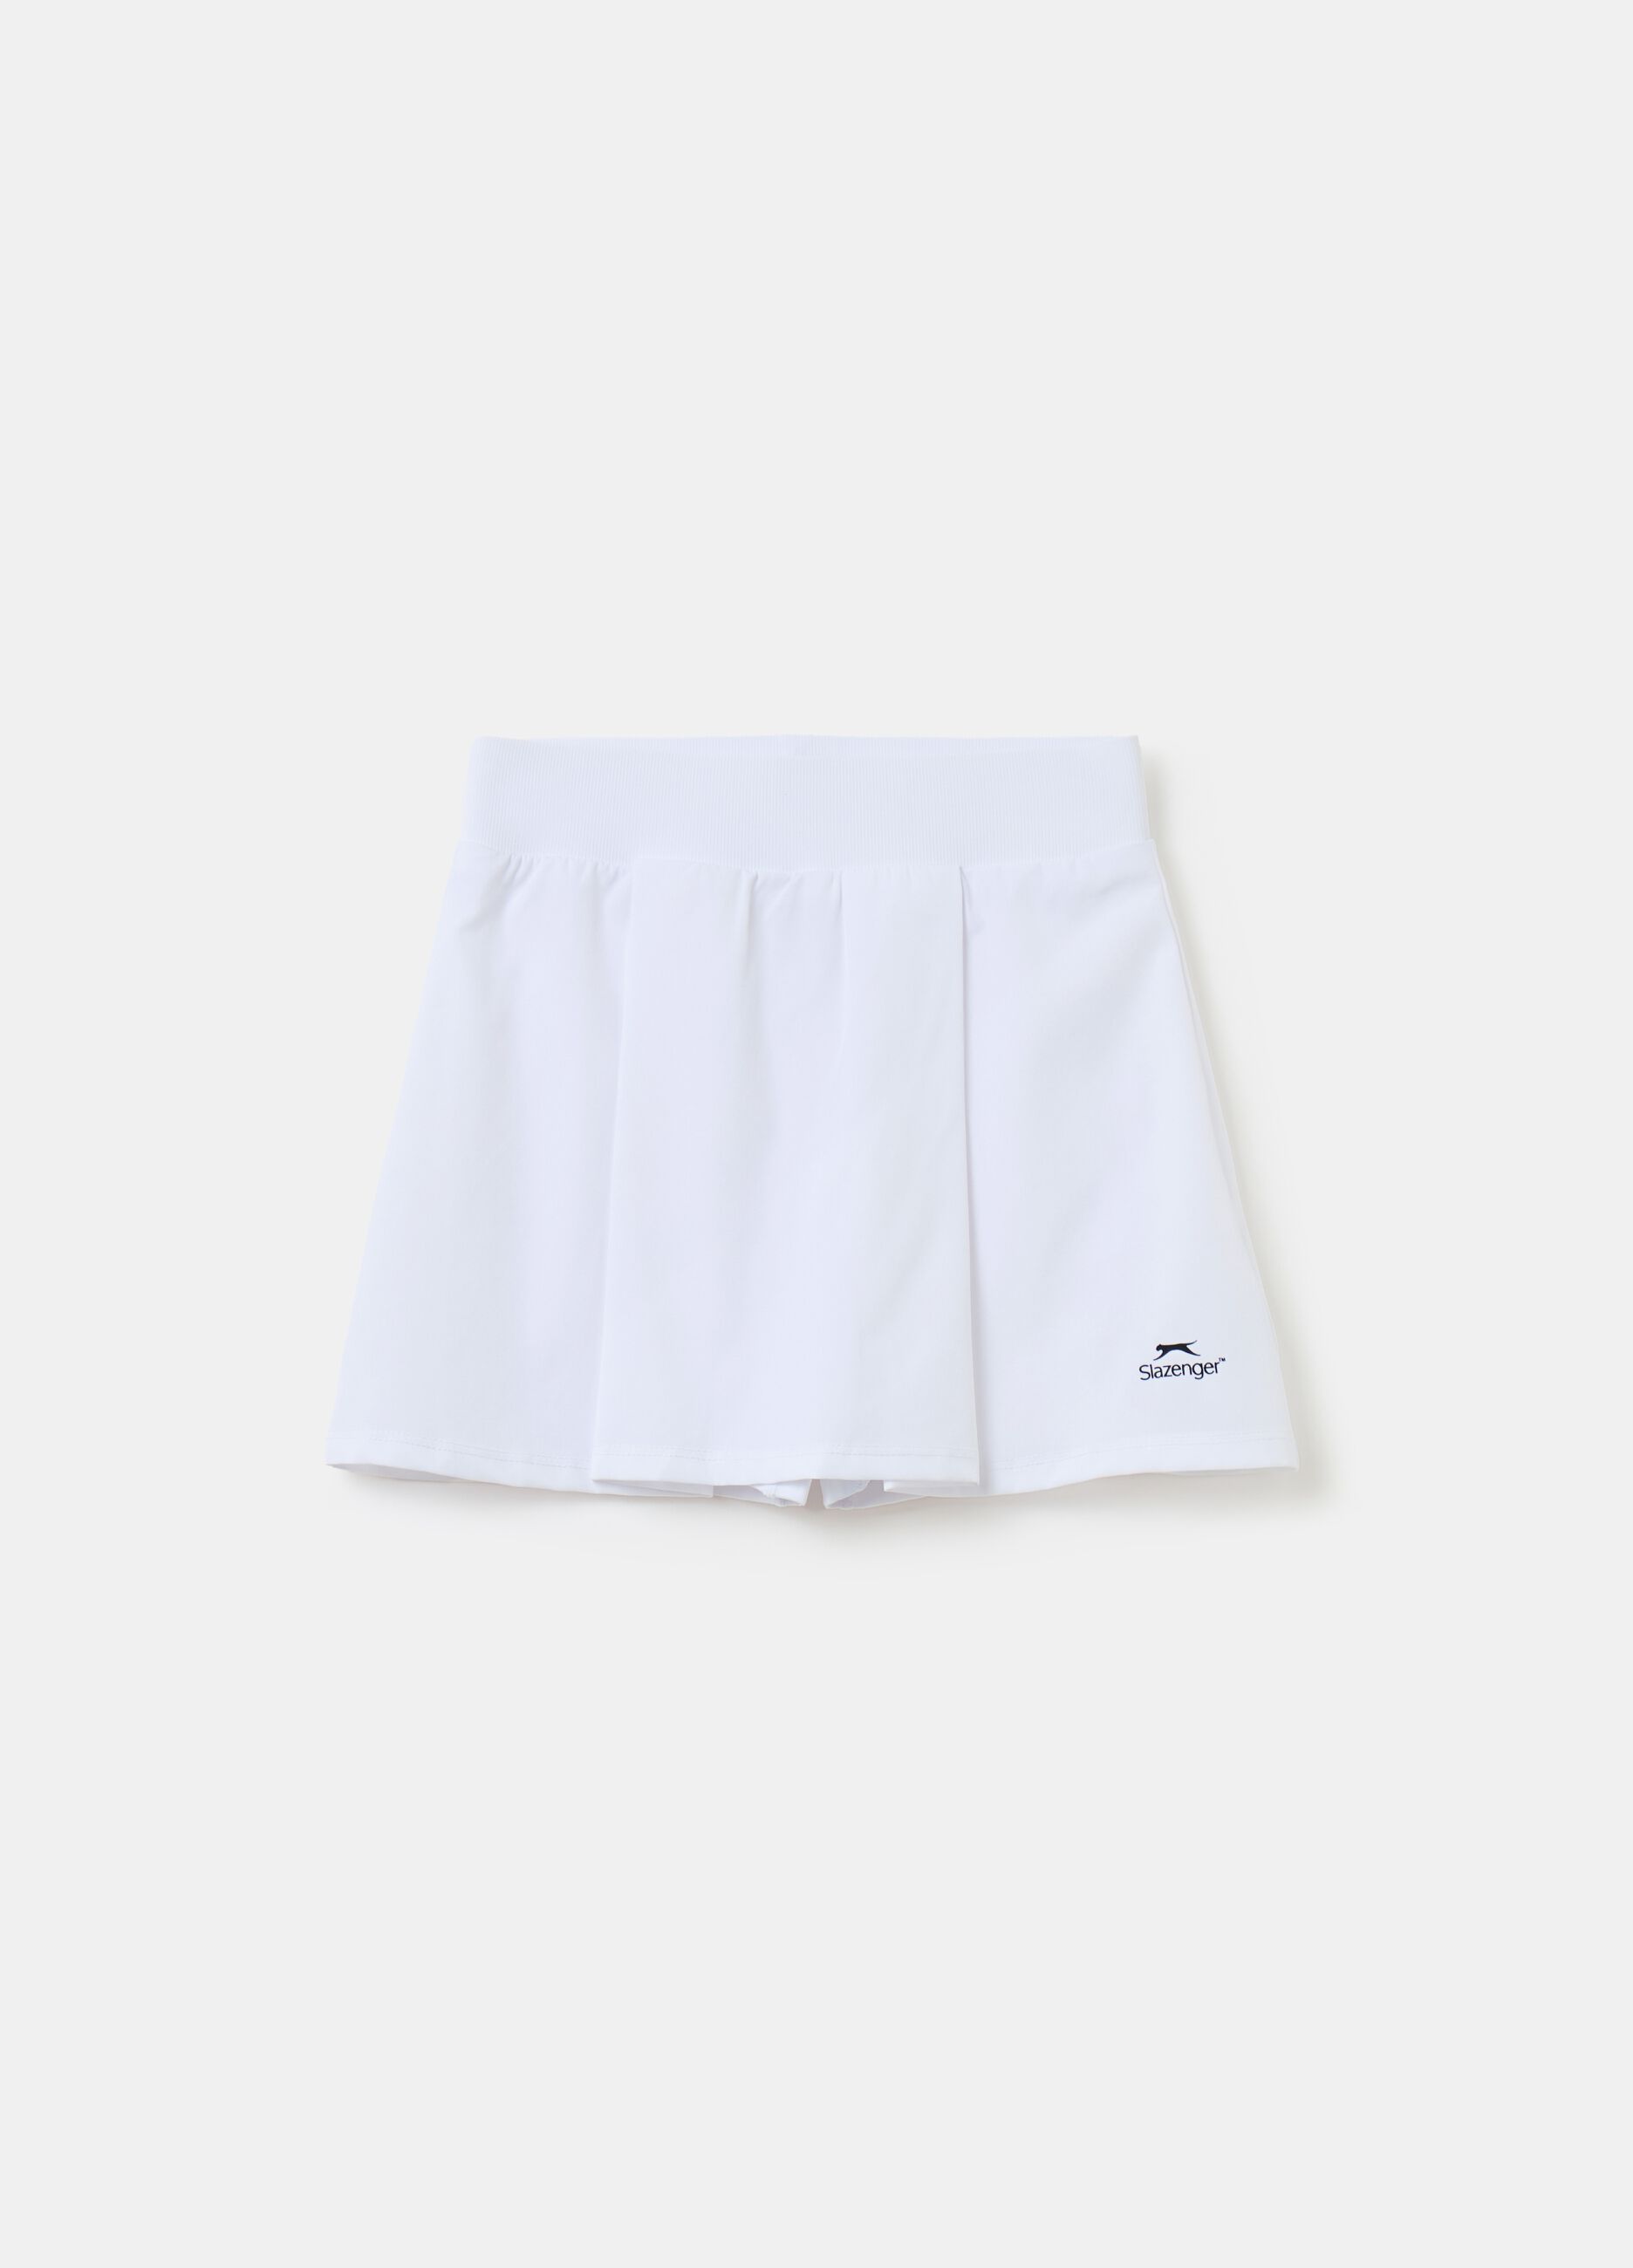 Slazenger short tennis skirt